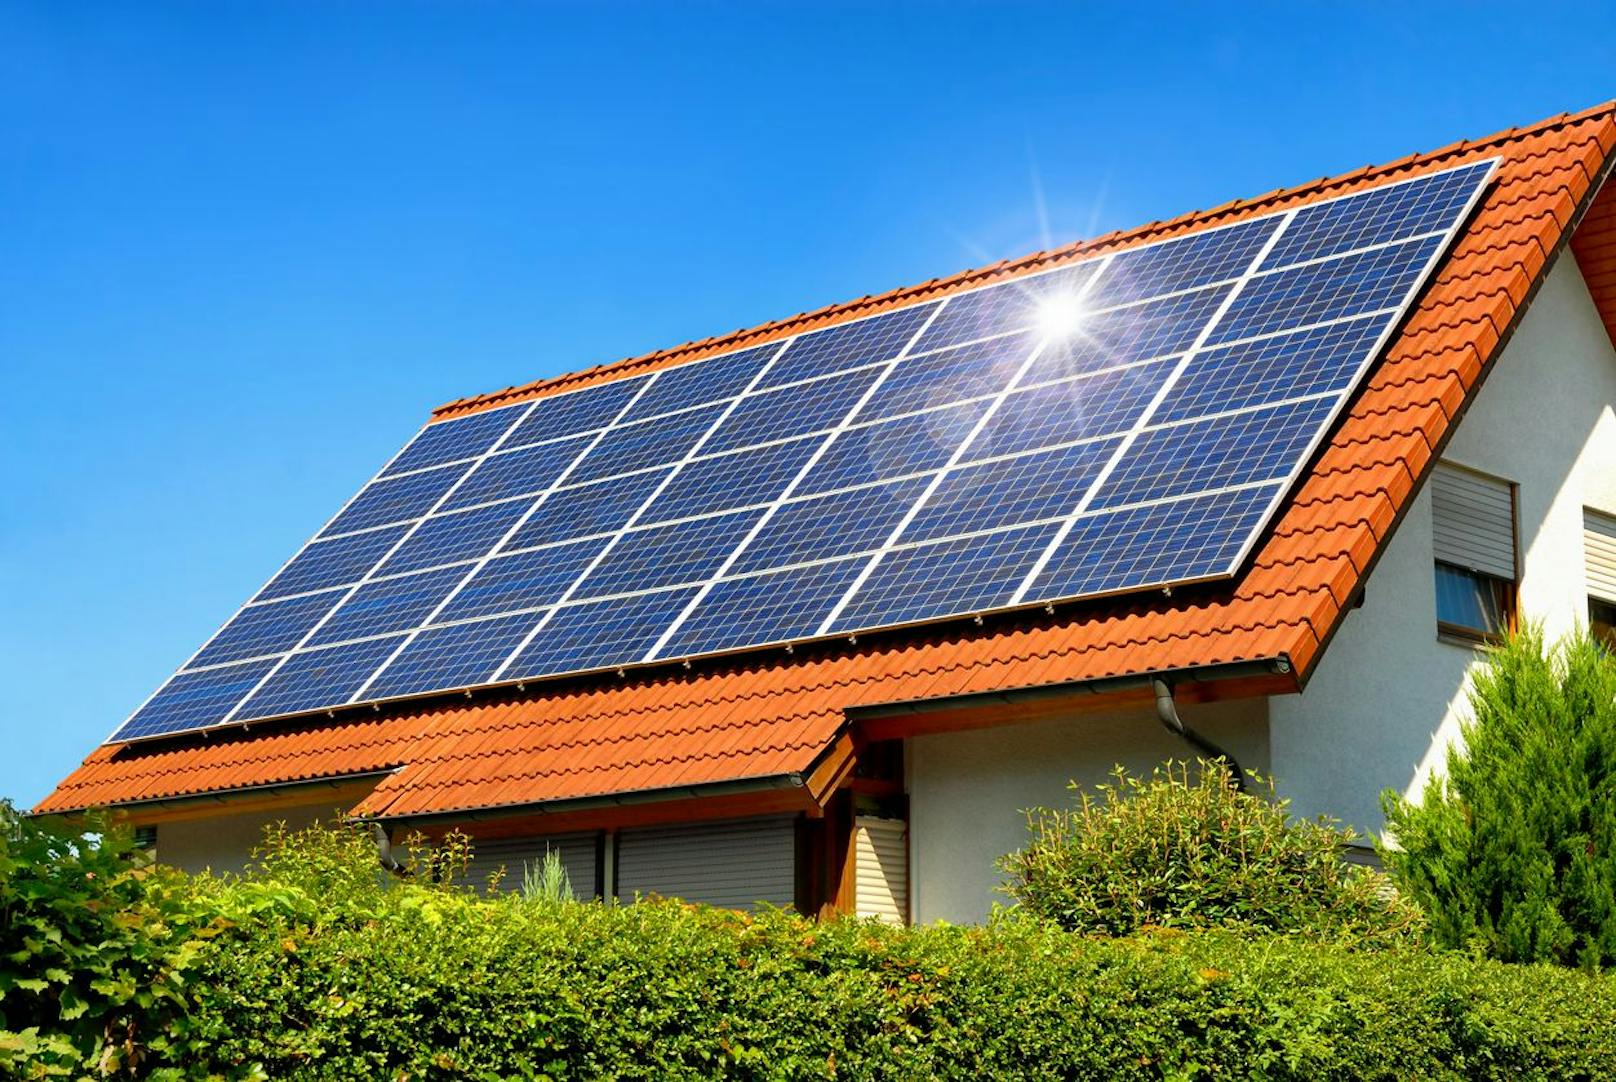 Viele steigen derzeit auf Photovoltaik-Anlagen um.